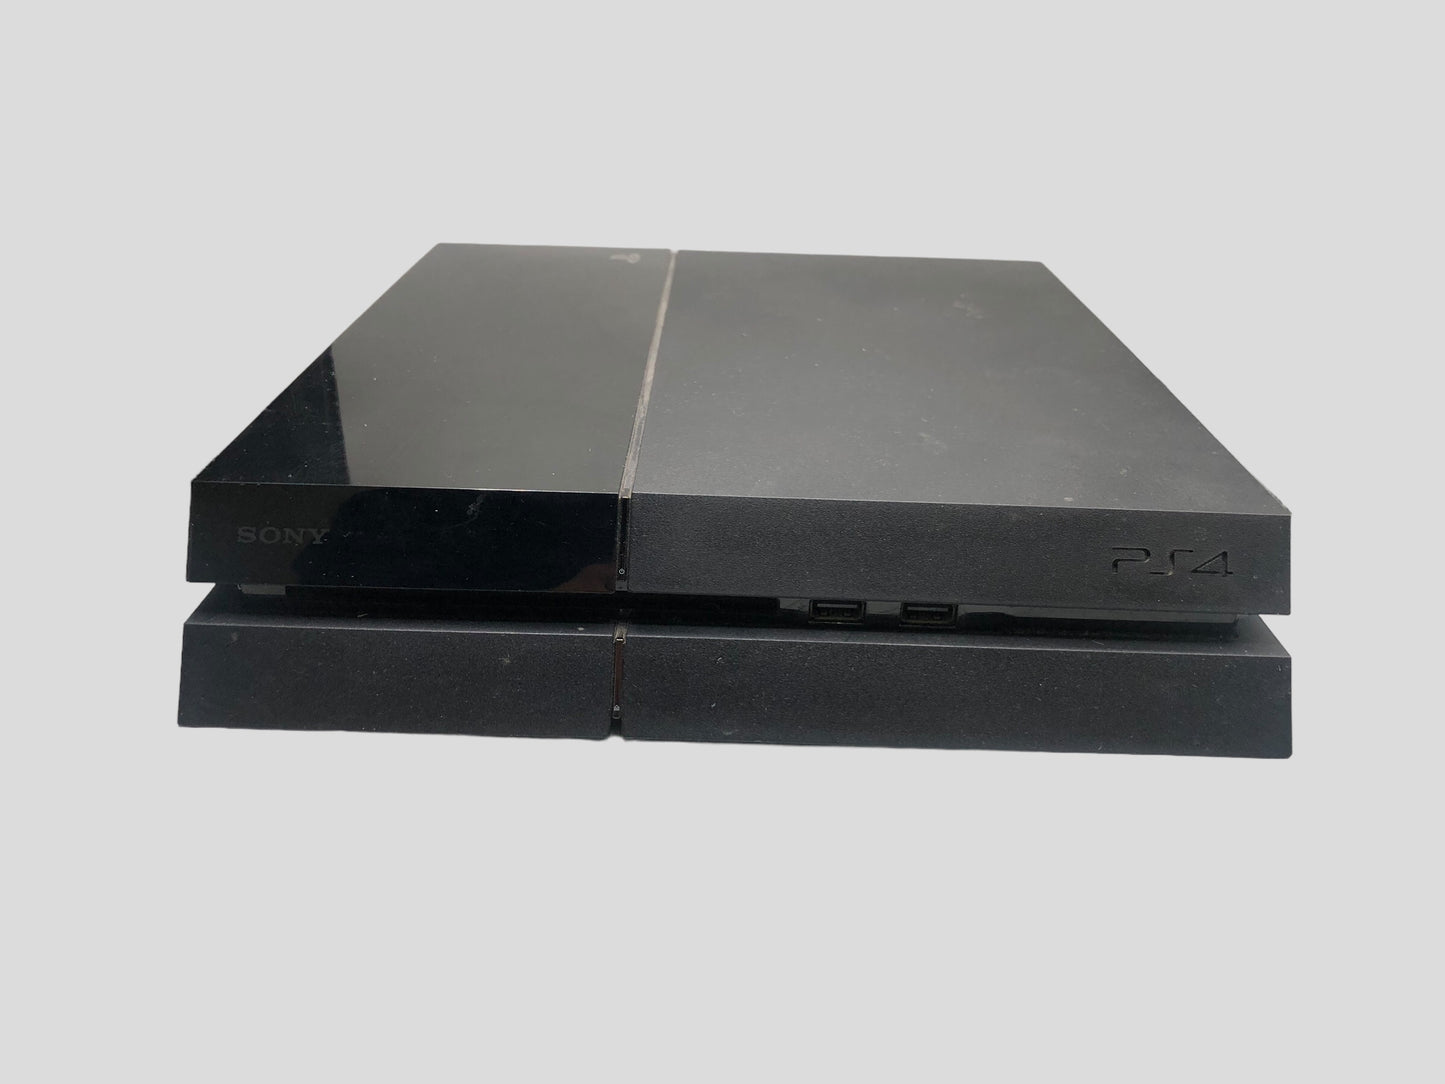 Sony Regular PlayStation 4 Slim CUH-1001A 500GB